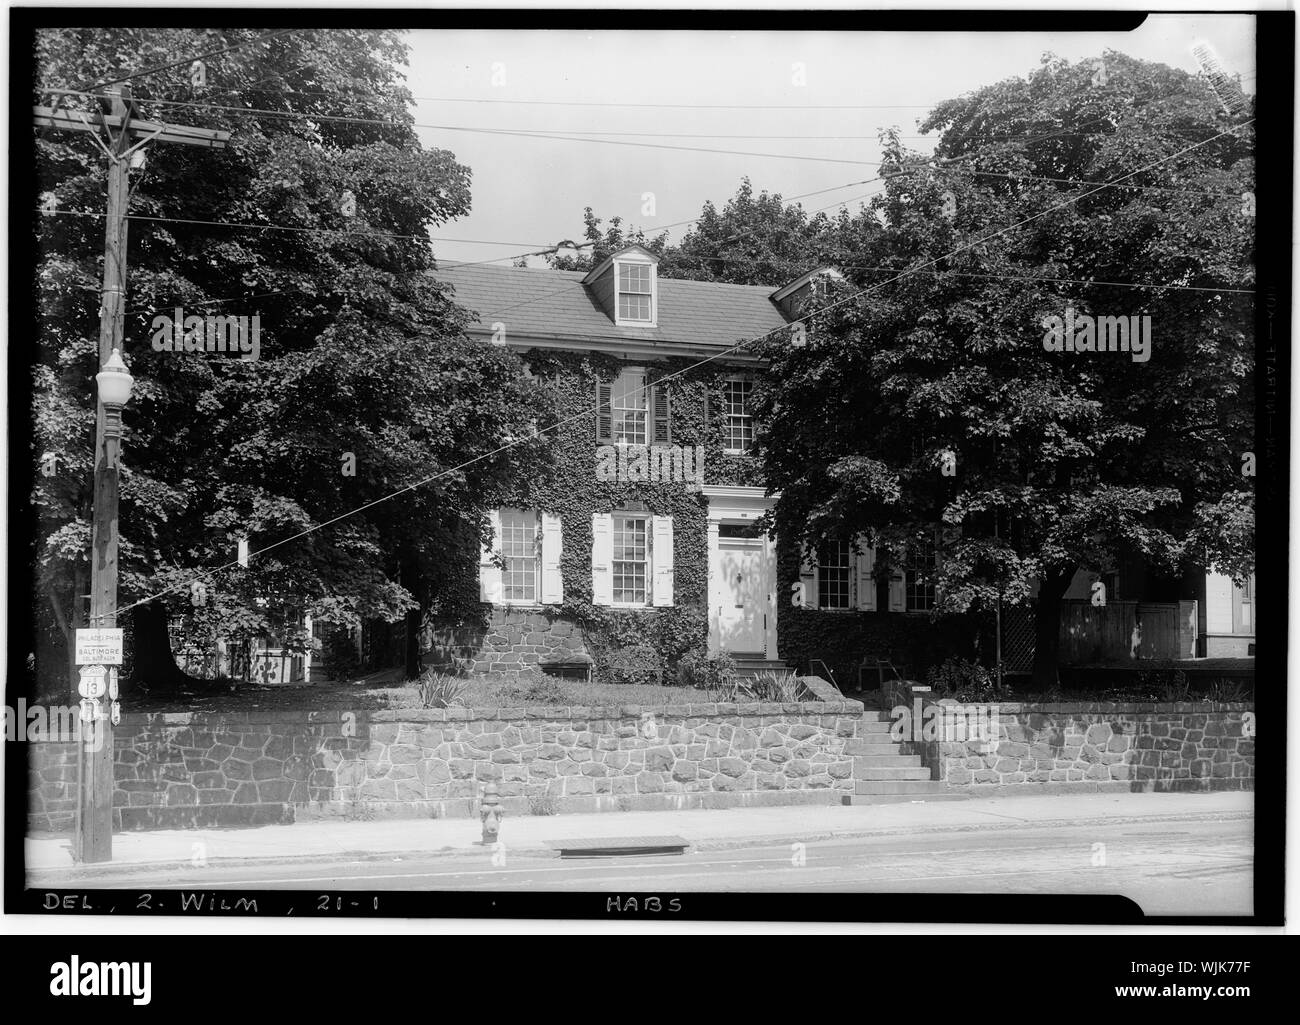 Historischer amerikanischer Gebäude Umfrage W. S. Stewart, Fotograf 12.08.25, von 1936 Ansicht Süd-ost-derrickson House, North Market Street 1801, Wilmington, New Castle County, DE; über 1771 Gebaut von James Marshall. Stockfoto